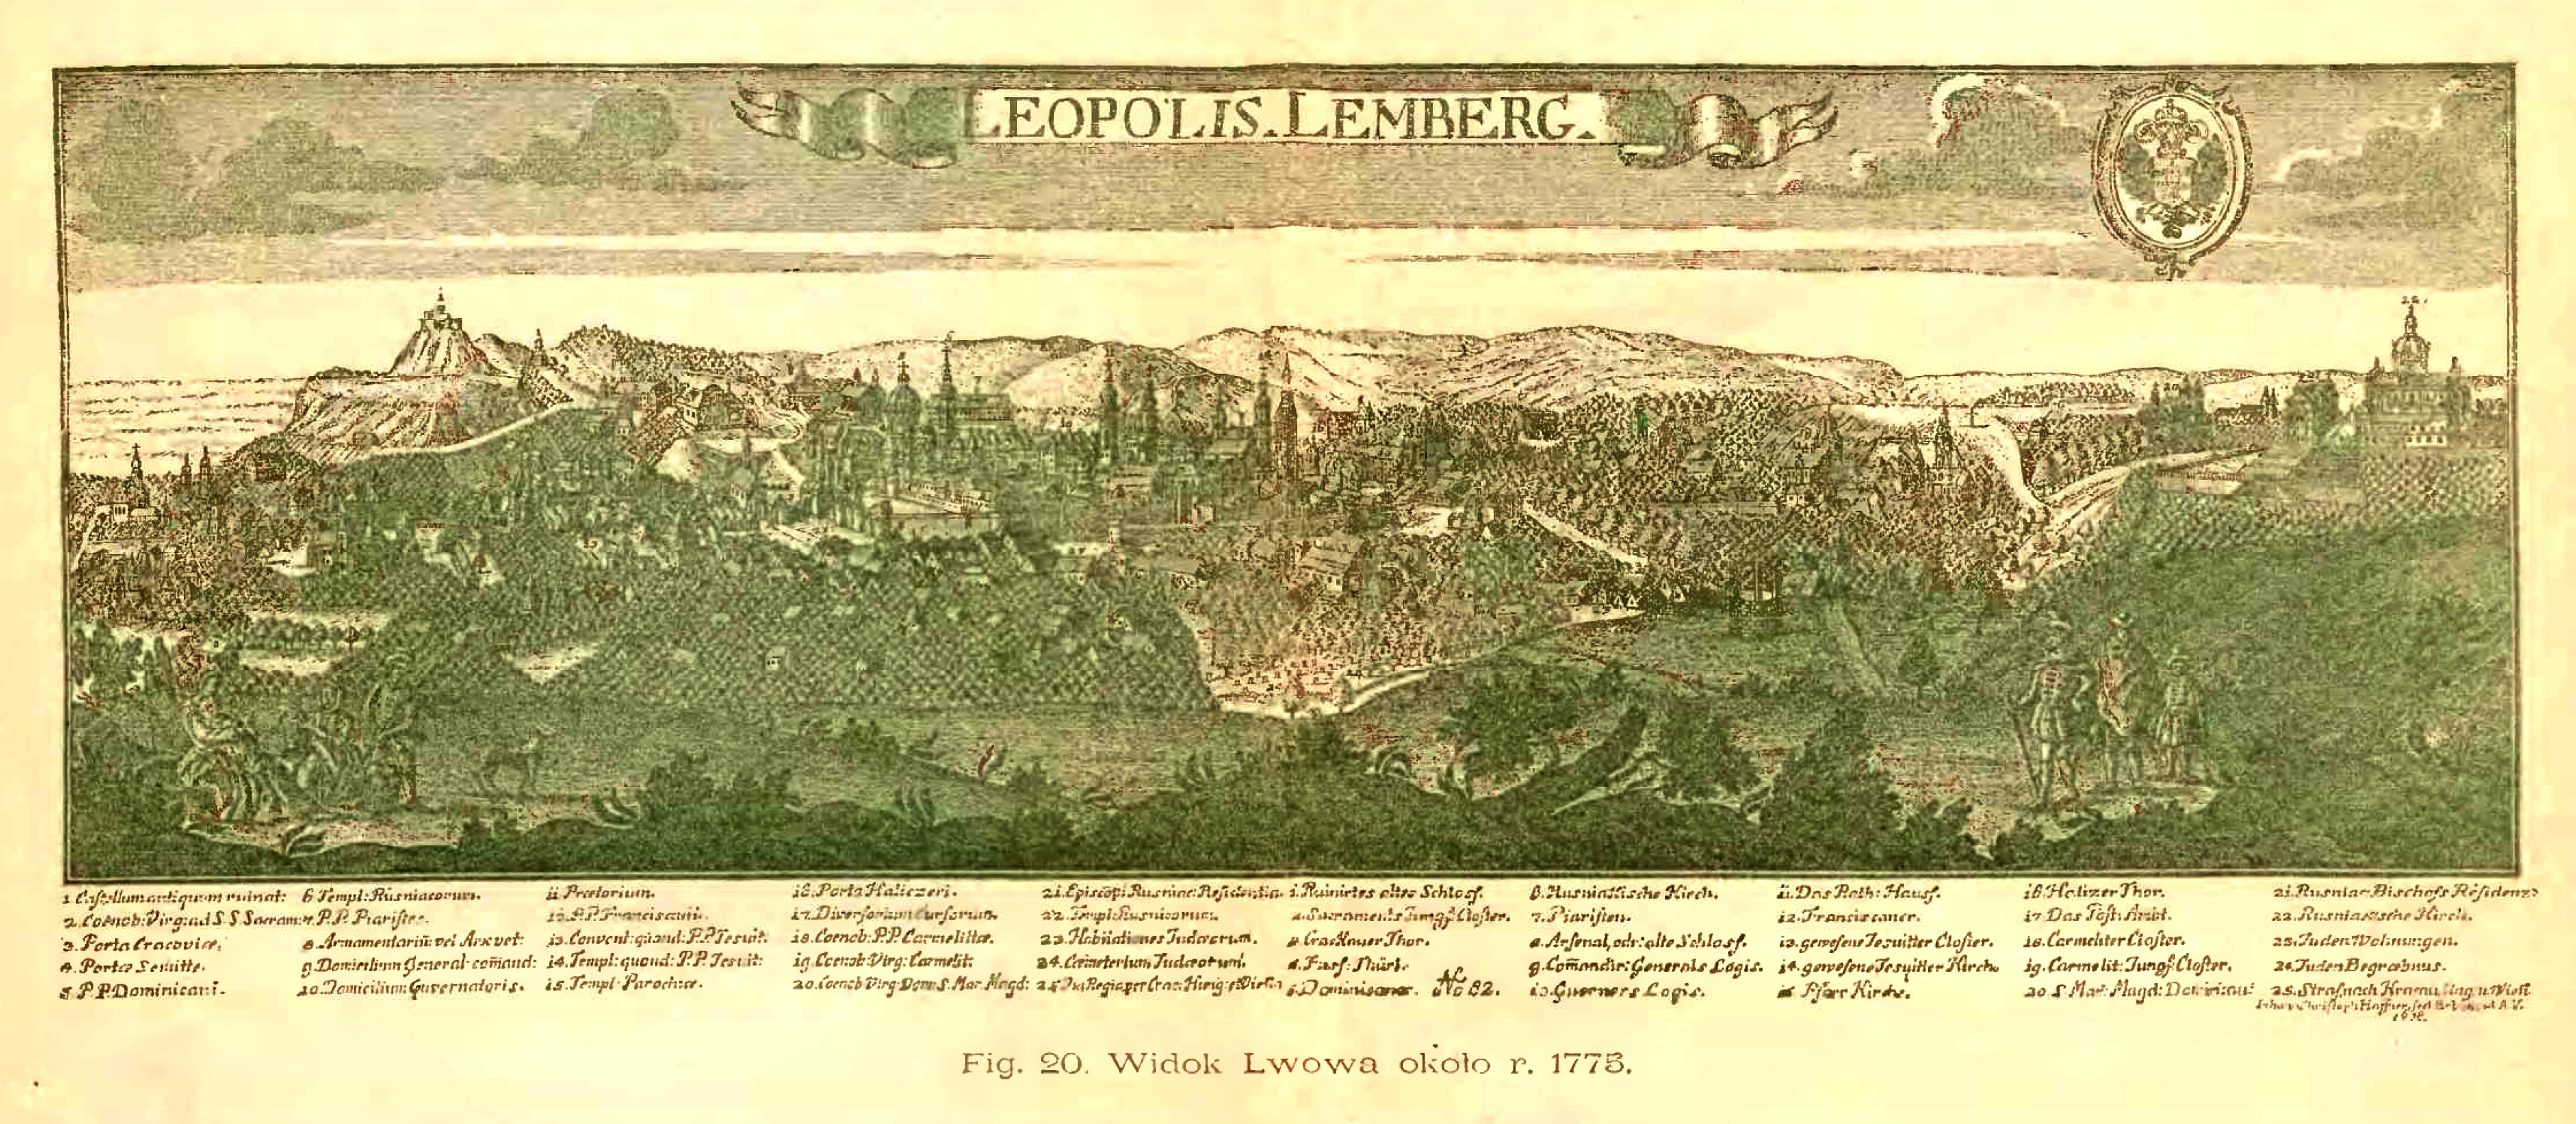 Widok Lwowa około 1775 roku, Źródło: F. Papée, Historia miasta Lwowa w zarysie, Lwów 1894, między s. 156 i 157.